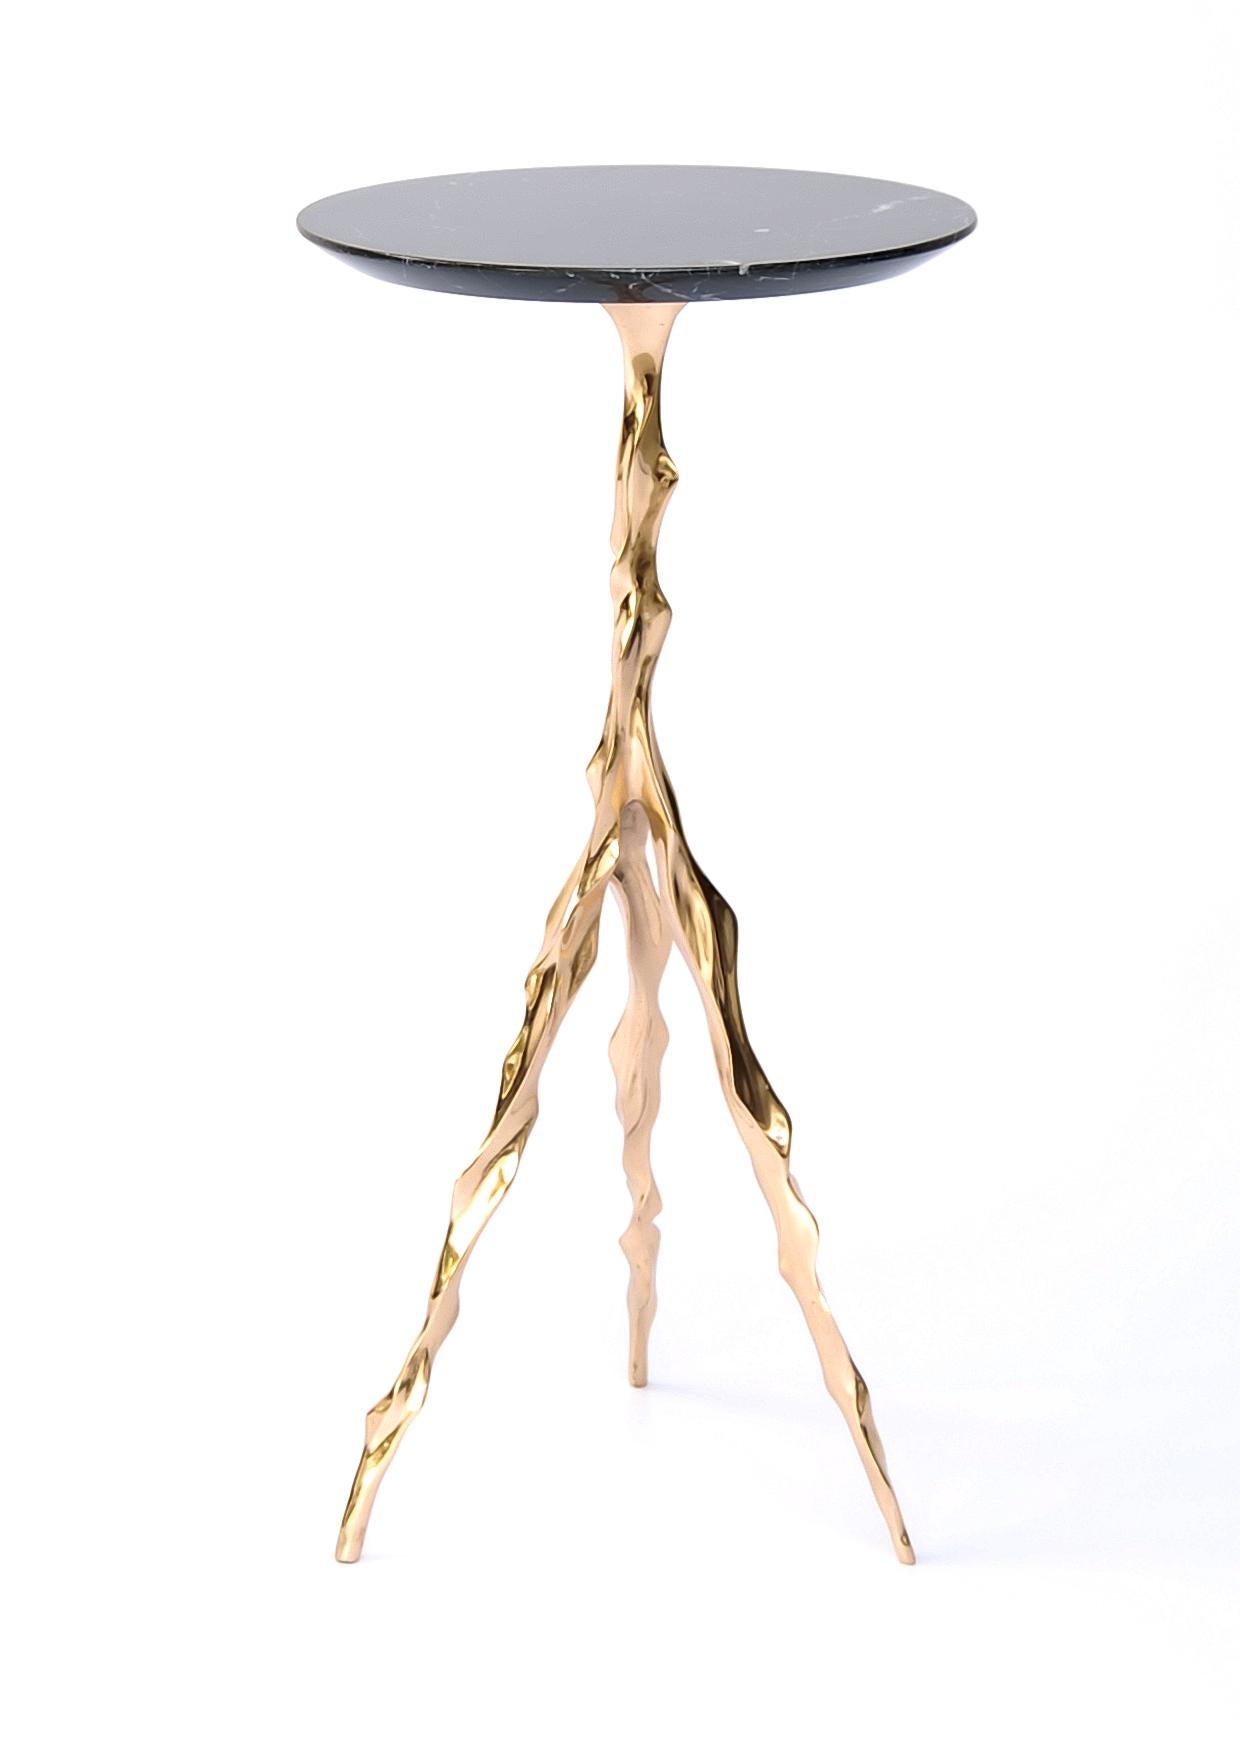 Table à boire Etta avec plateau en marbre Nero Marquina de Fakasaka Design.
Dimensions : L 27 cm, P 27 cm, H 62 cm.
MATERIAL : base en bronze poli, plateau en marbre Nero Marquina.
 
Disponible également dans différents matériaux de plateau de table